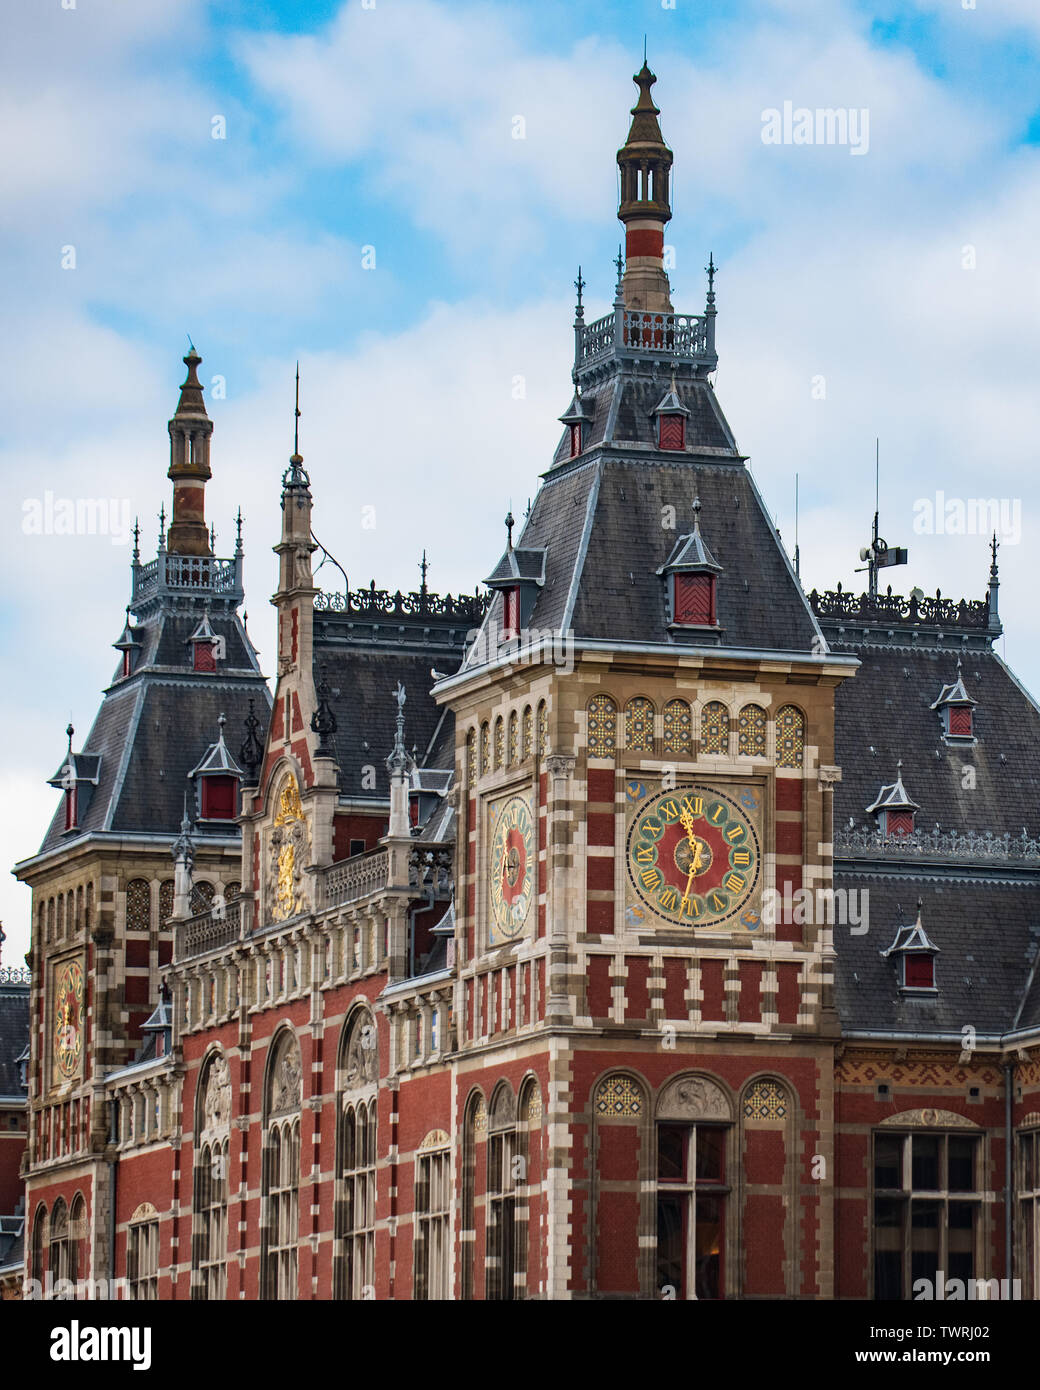 Amsterdam - le célèbre site touristique Amsterdam Amsterdam Centraal - Central / gare principale / gare à Amsterdam Pays-Bas - Banque D'Images